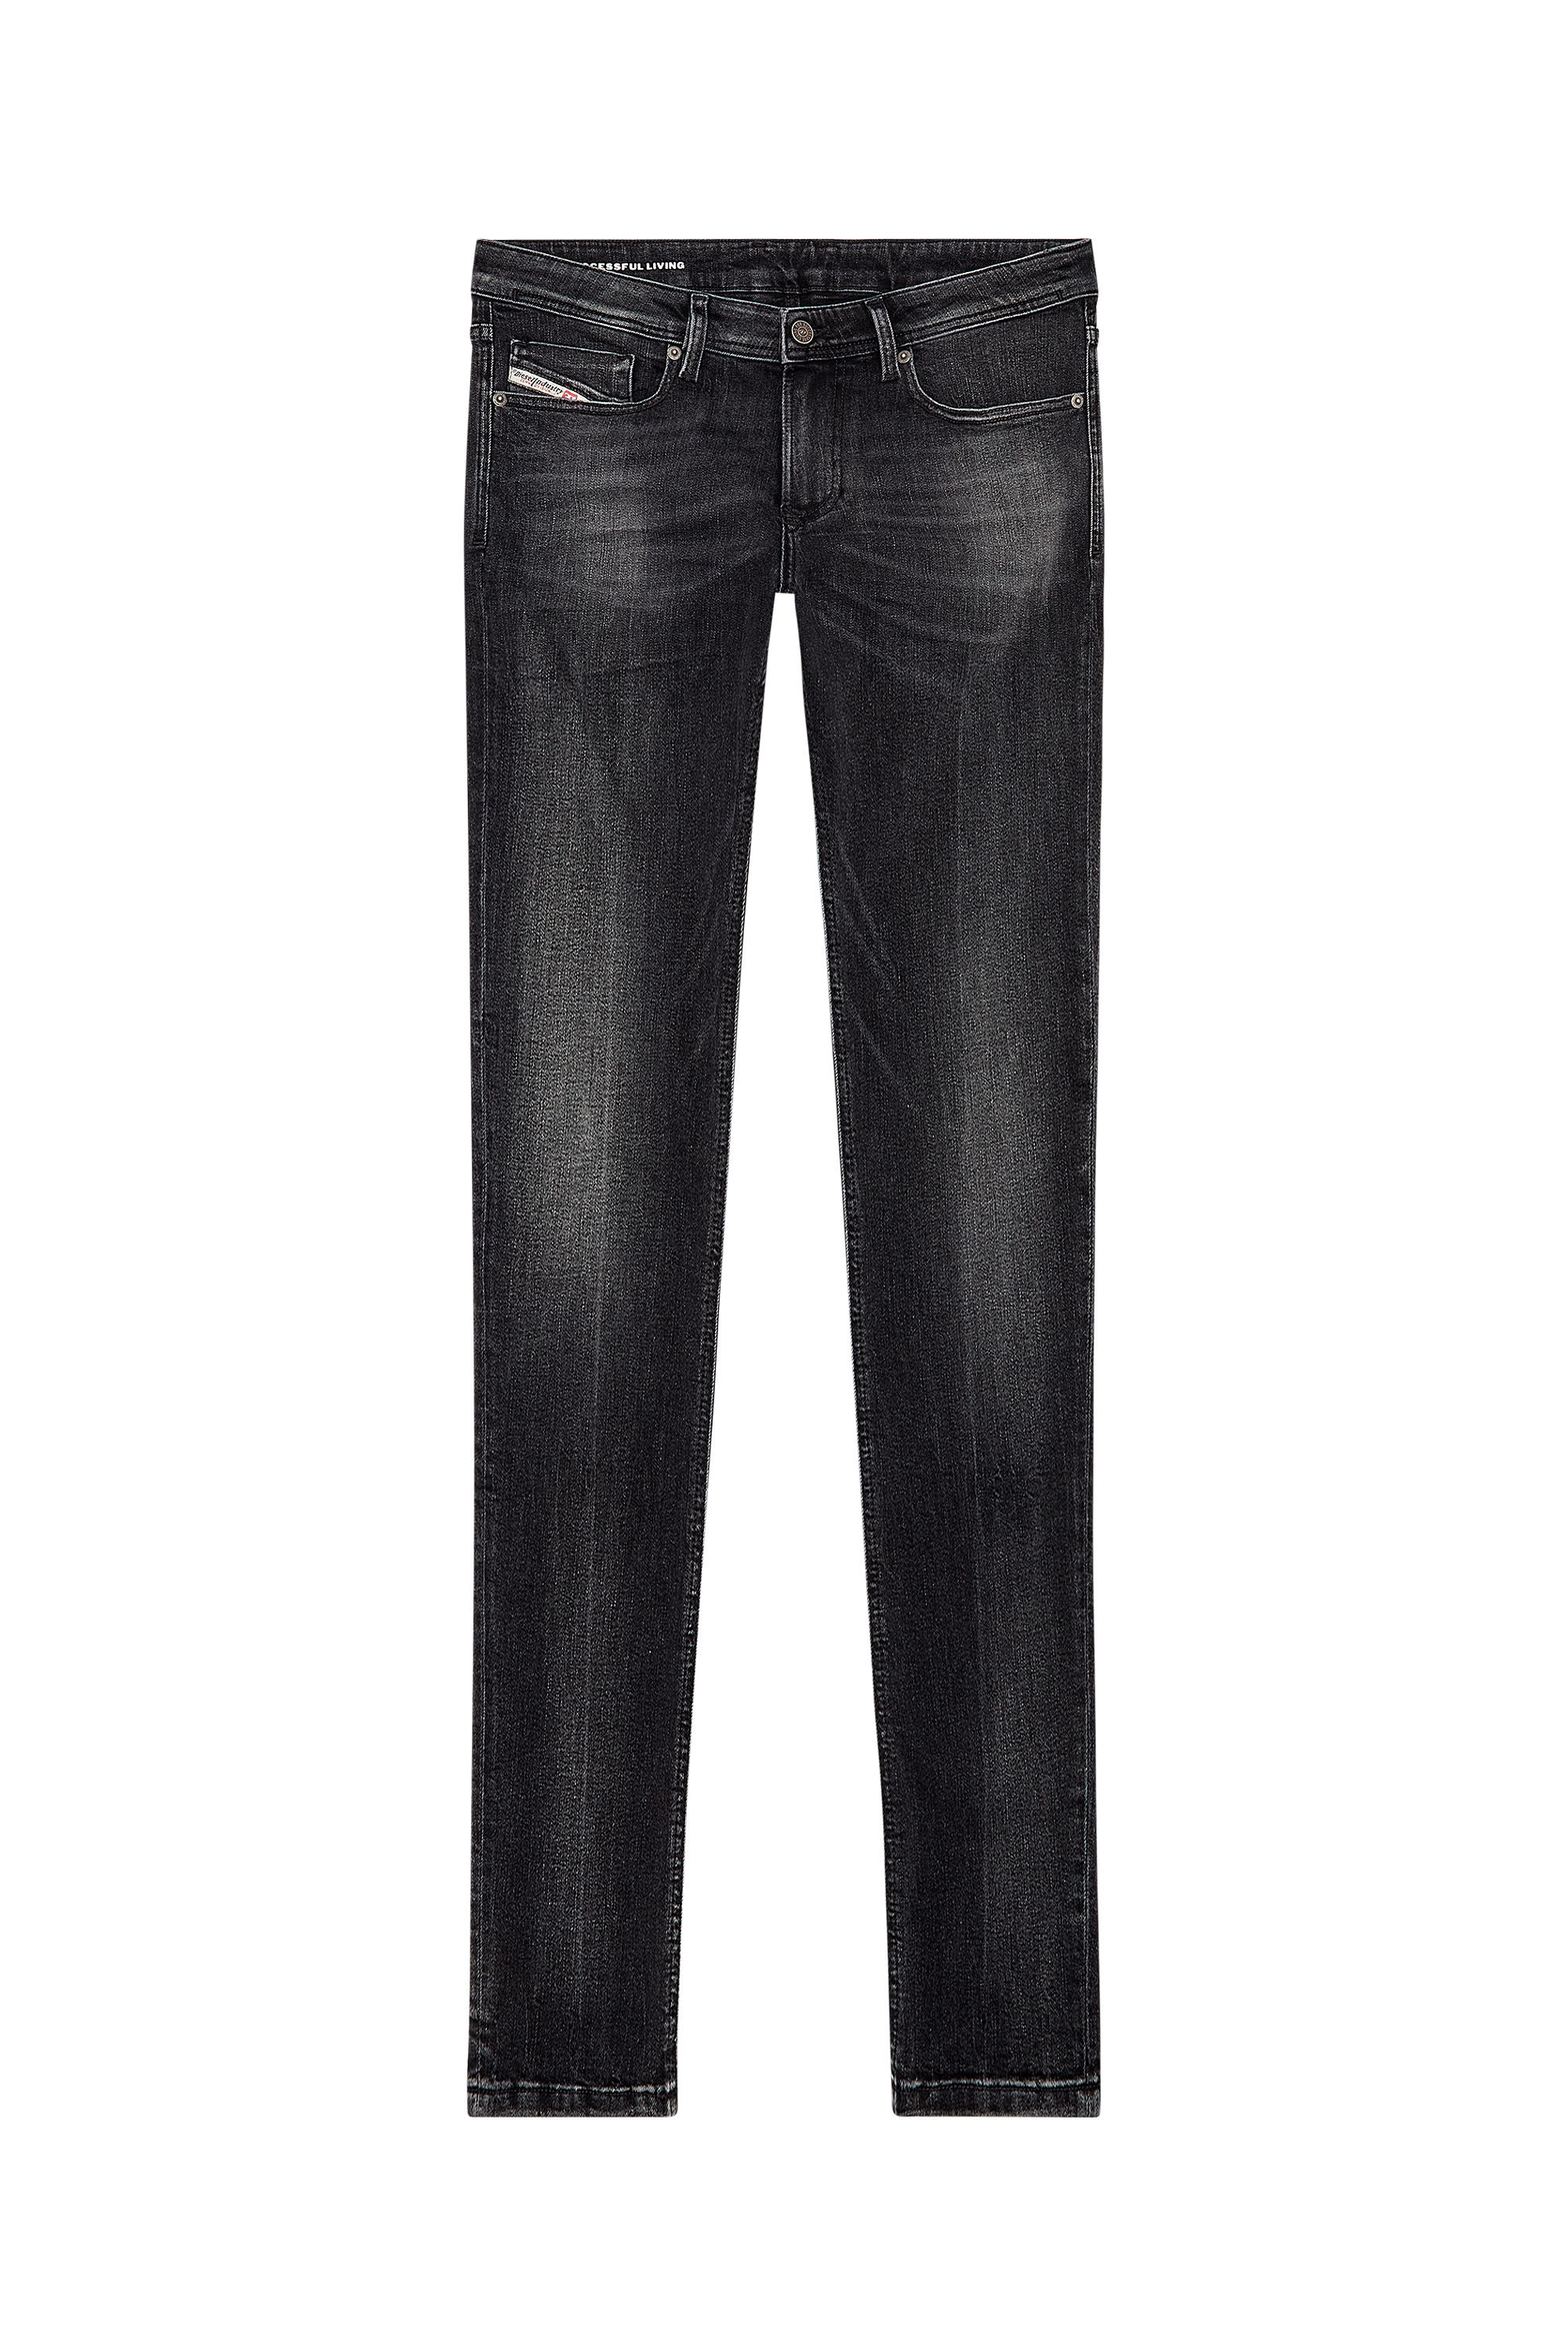 Diesel - Man Skinny Jeans 1979 Sleenker 0PFAX, Black/Dark grey - Image 2